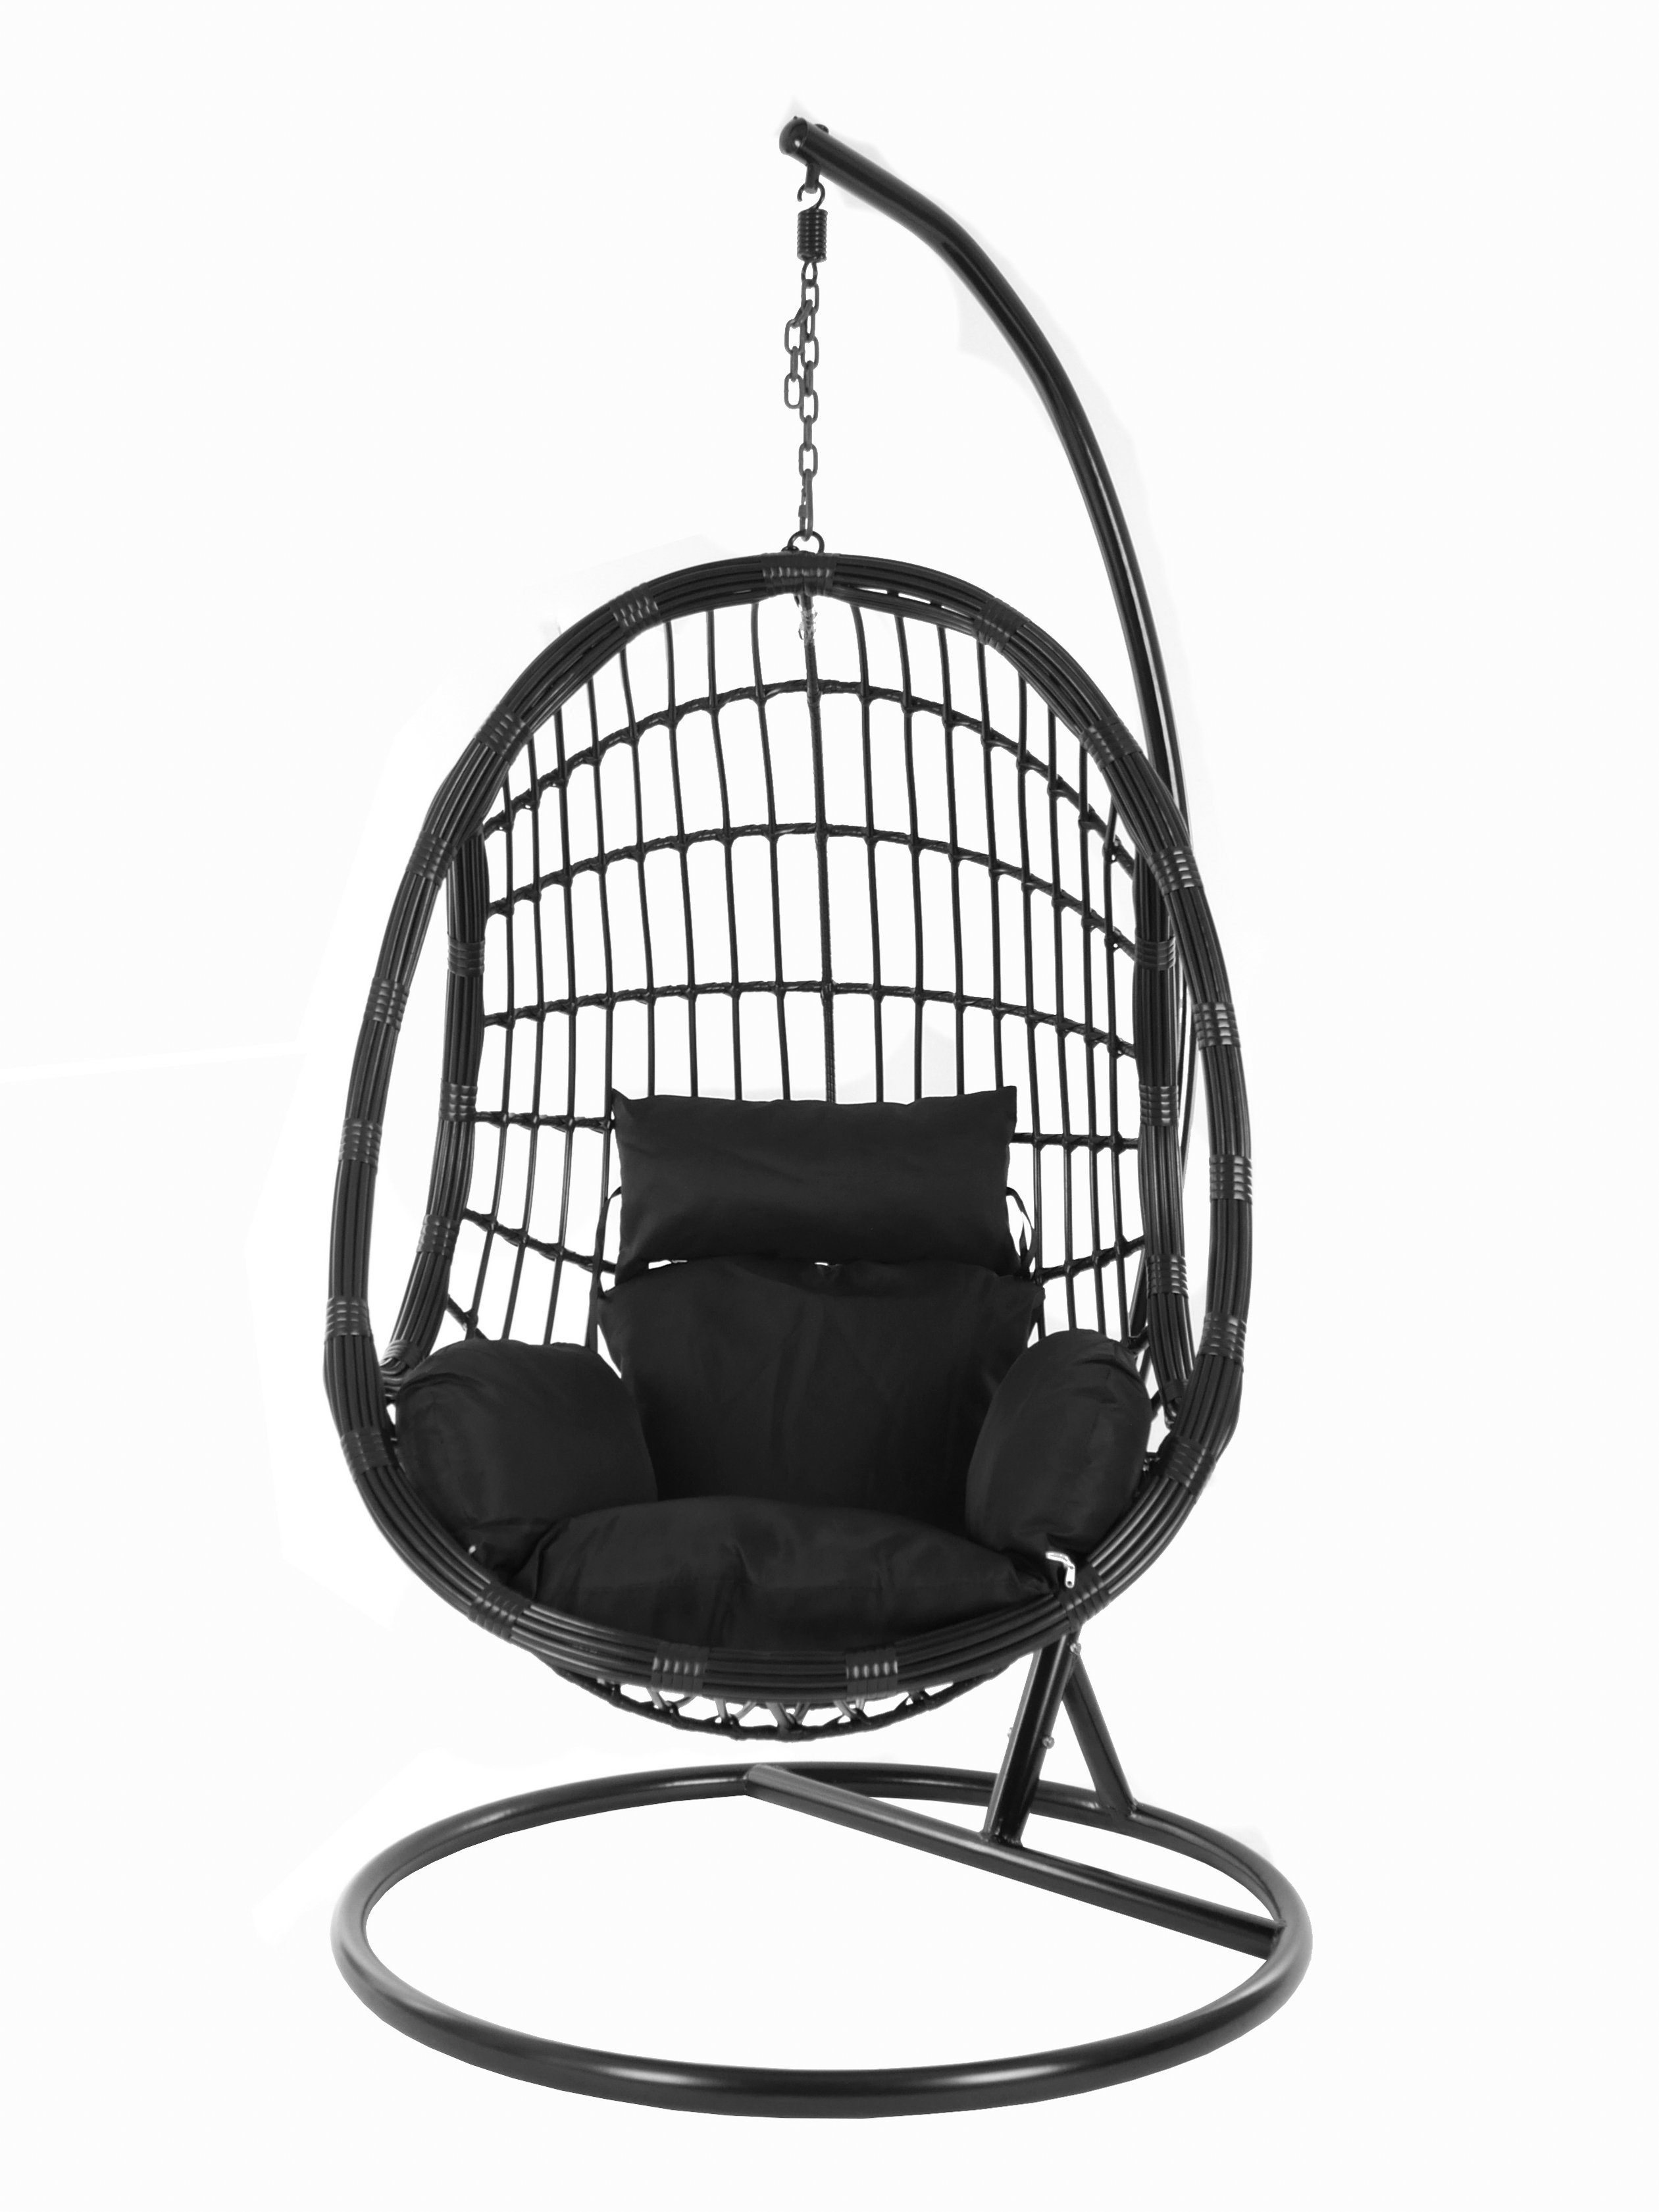 Nest-Kissen Hängesessel Hängesessel Gestell Chair, black, und Kissen, black) (9999 mit schwarz KIDEO PALMANOVA Schwebesessel, Swing